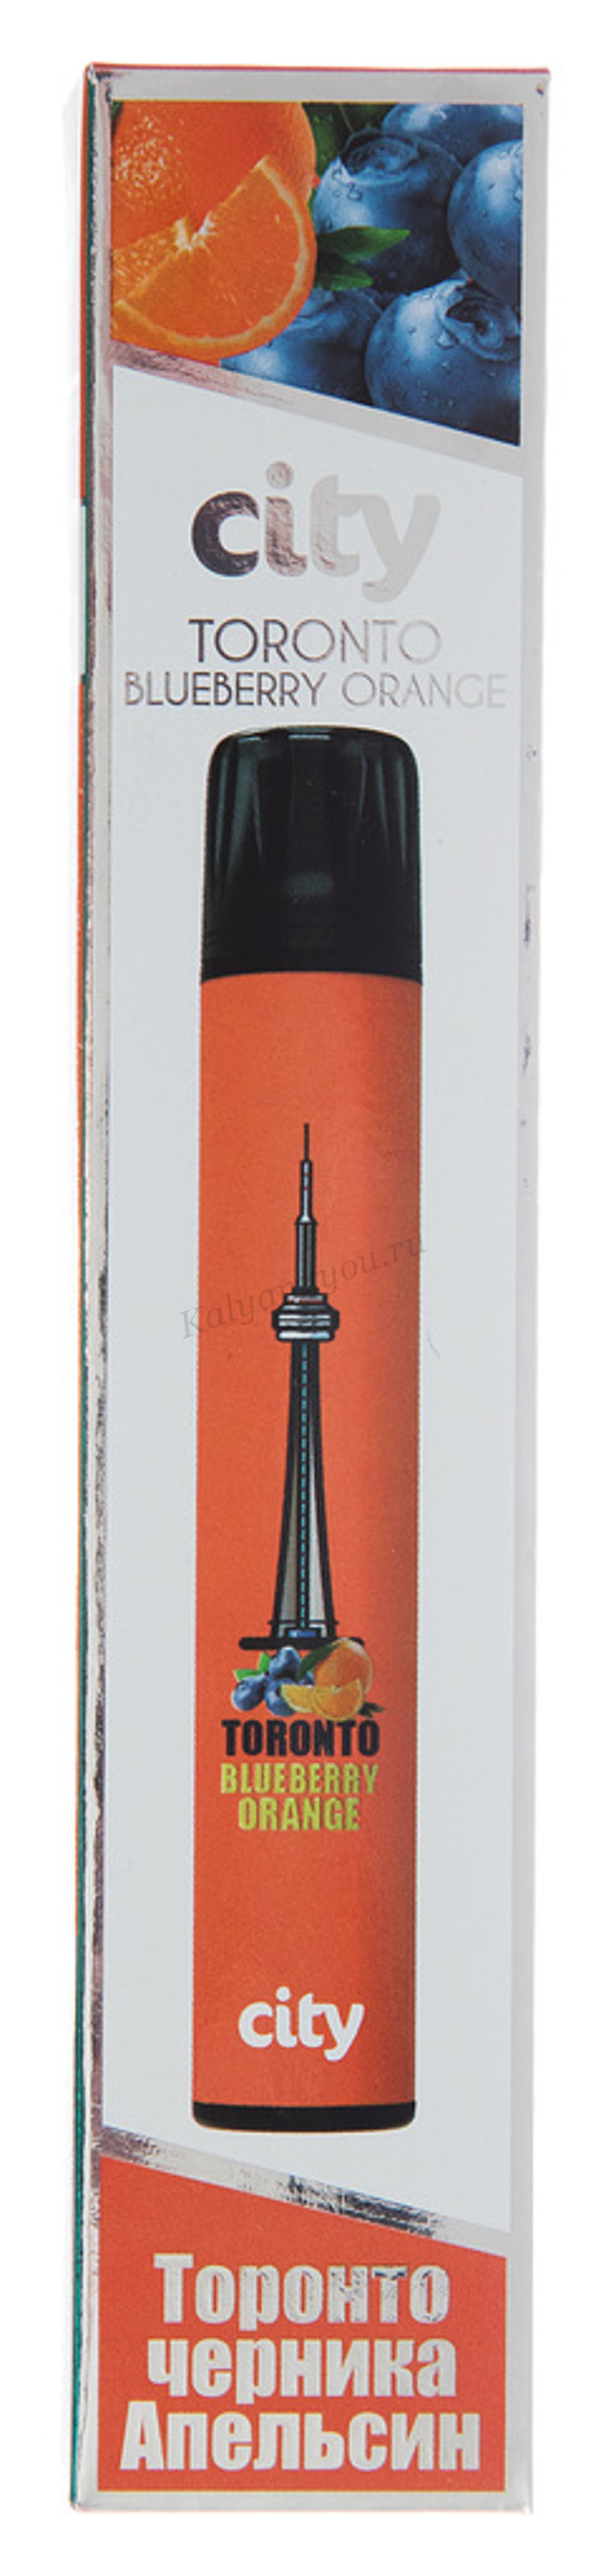 CITY SUBWAY 1000 / Торонто / Черника Апельсин